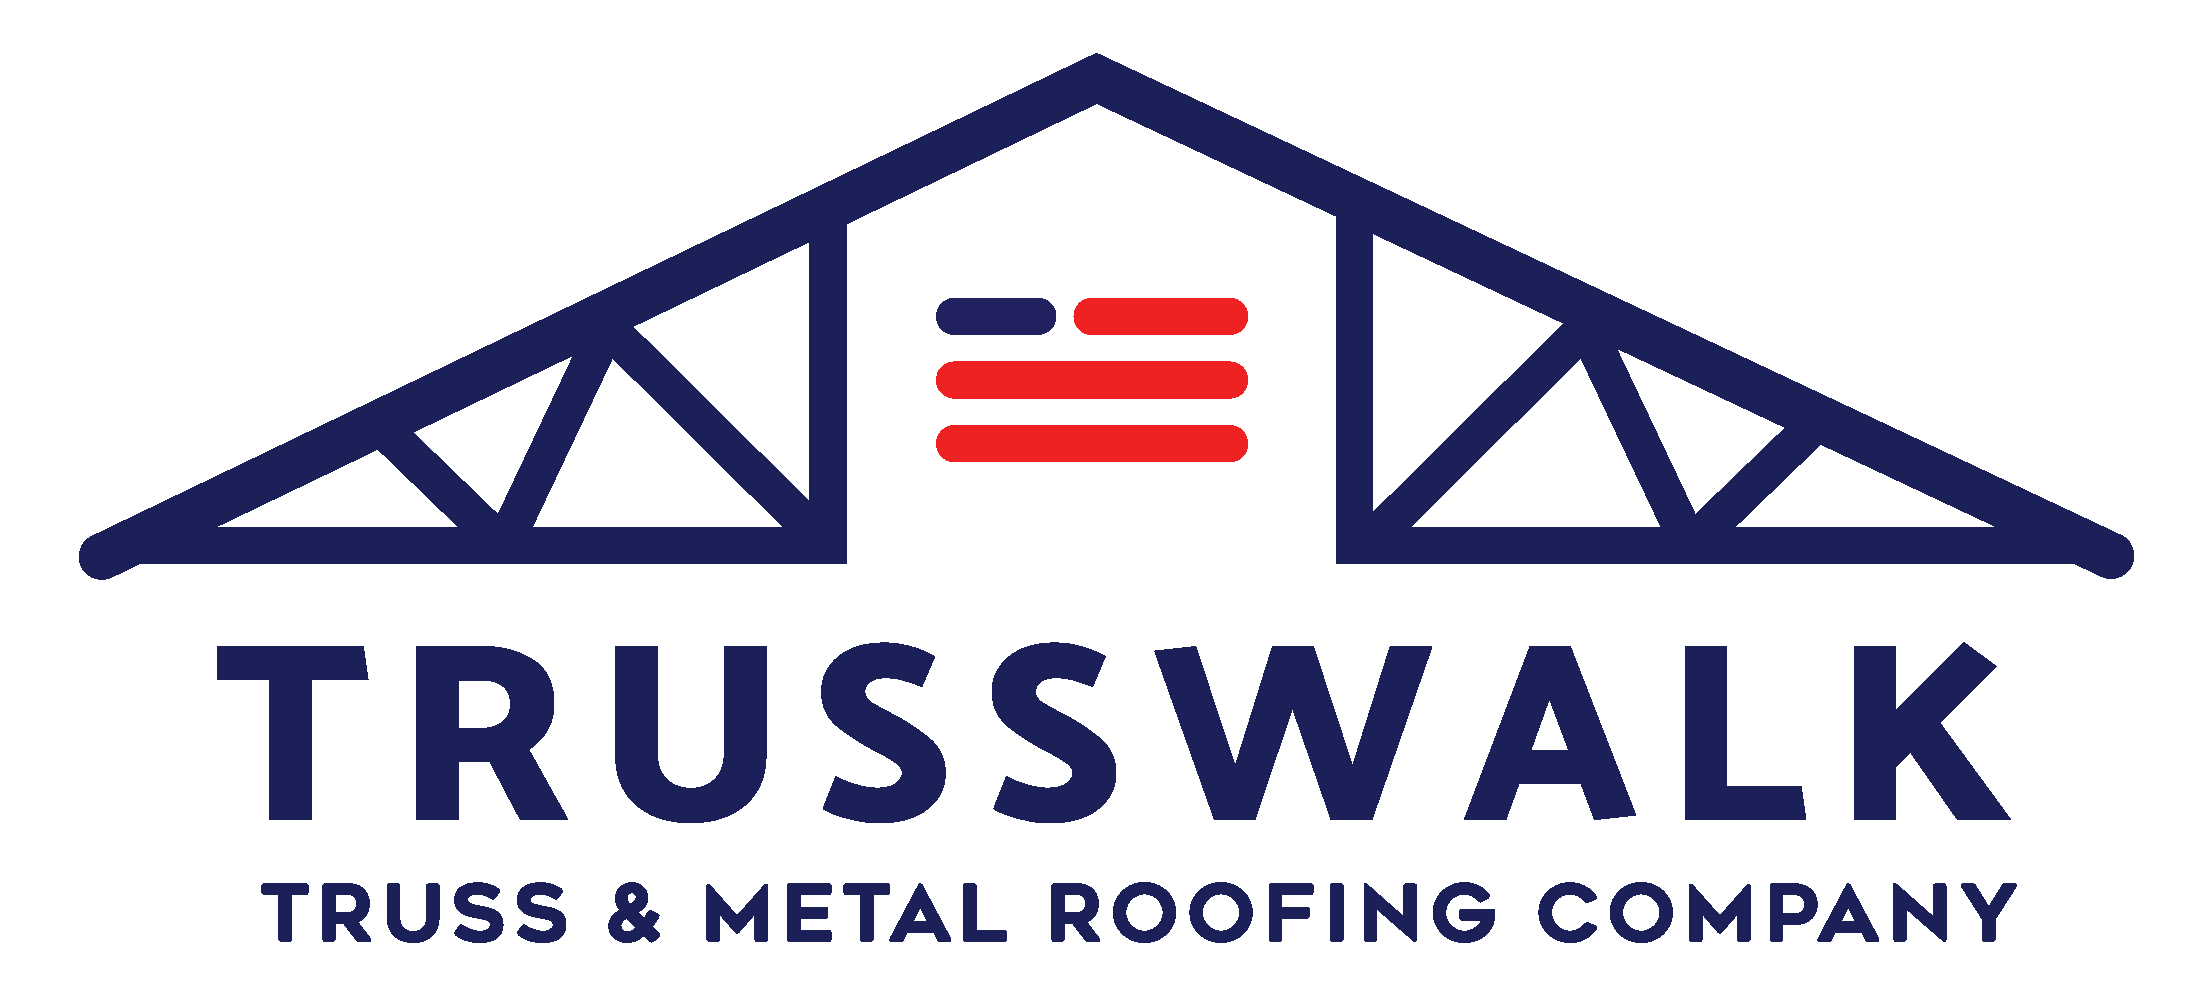 Trusswalk Roofing roof framing manufacturer